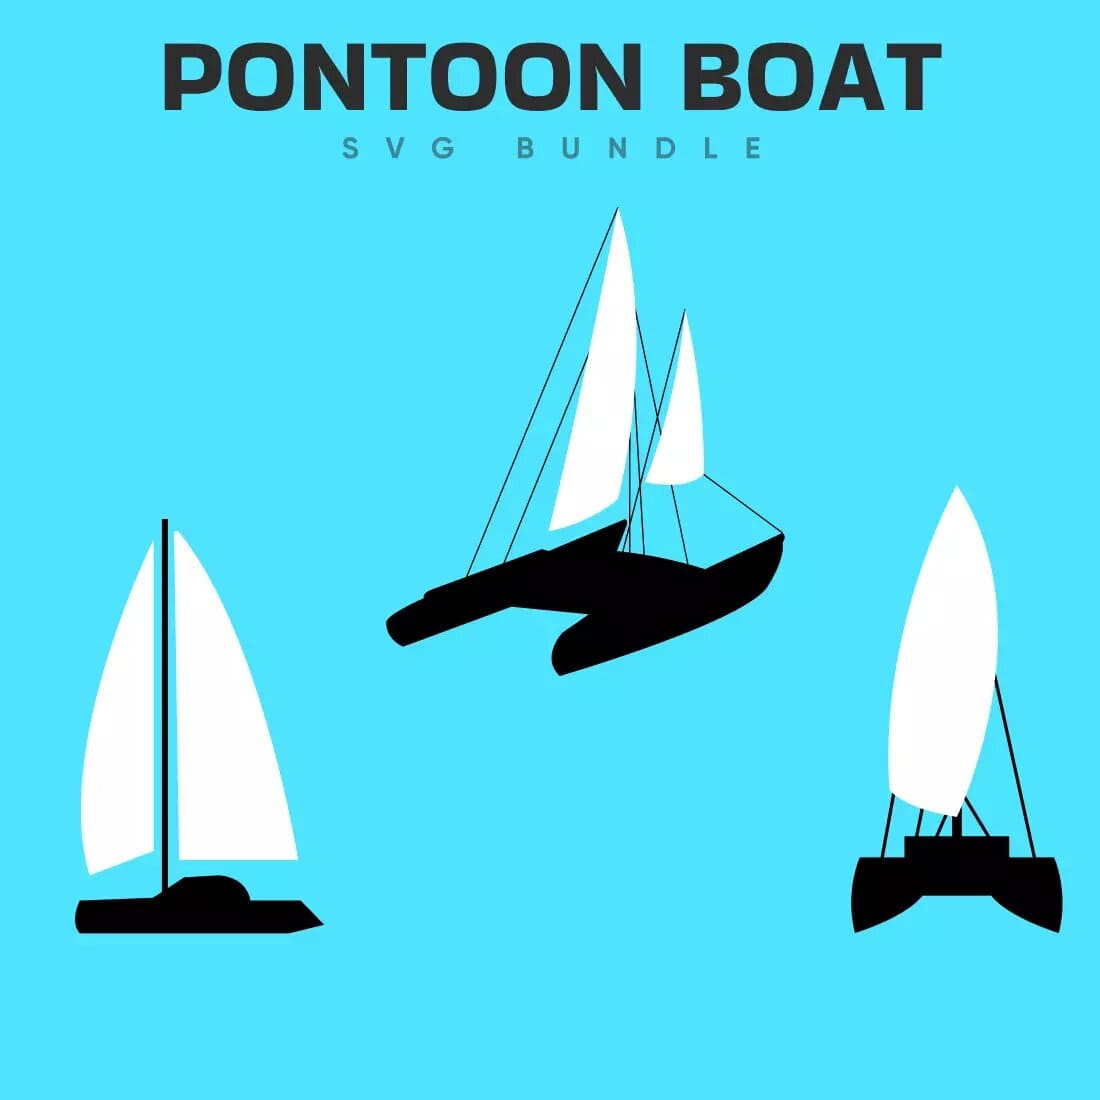 Pontoon Boat SVG Bundle Preview 4.